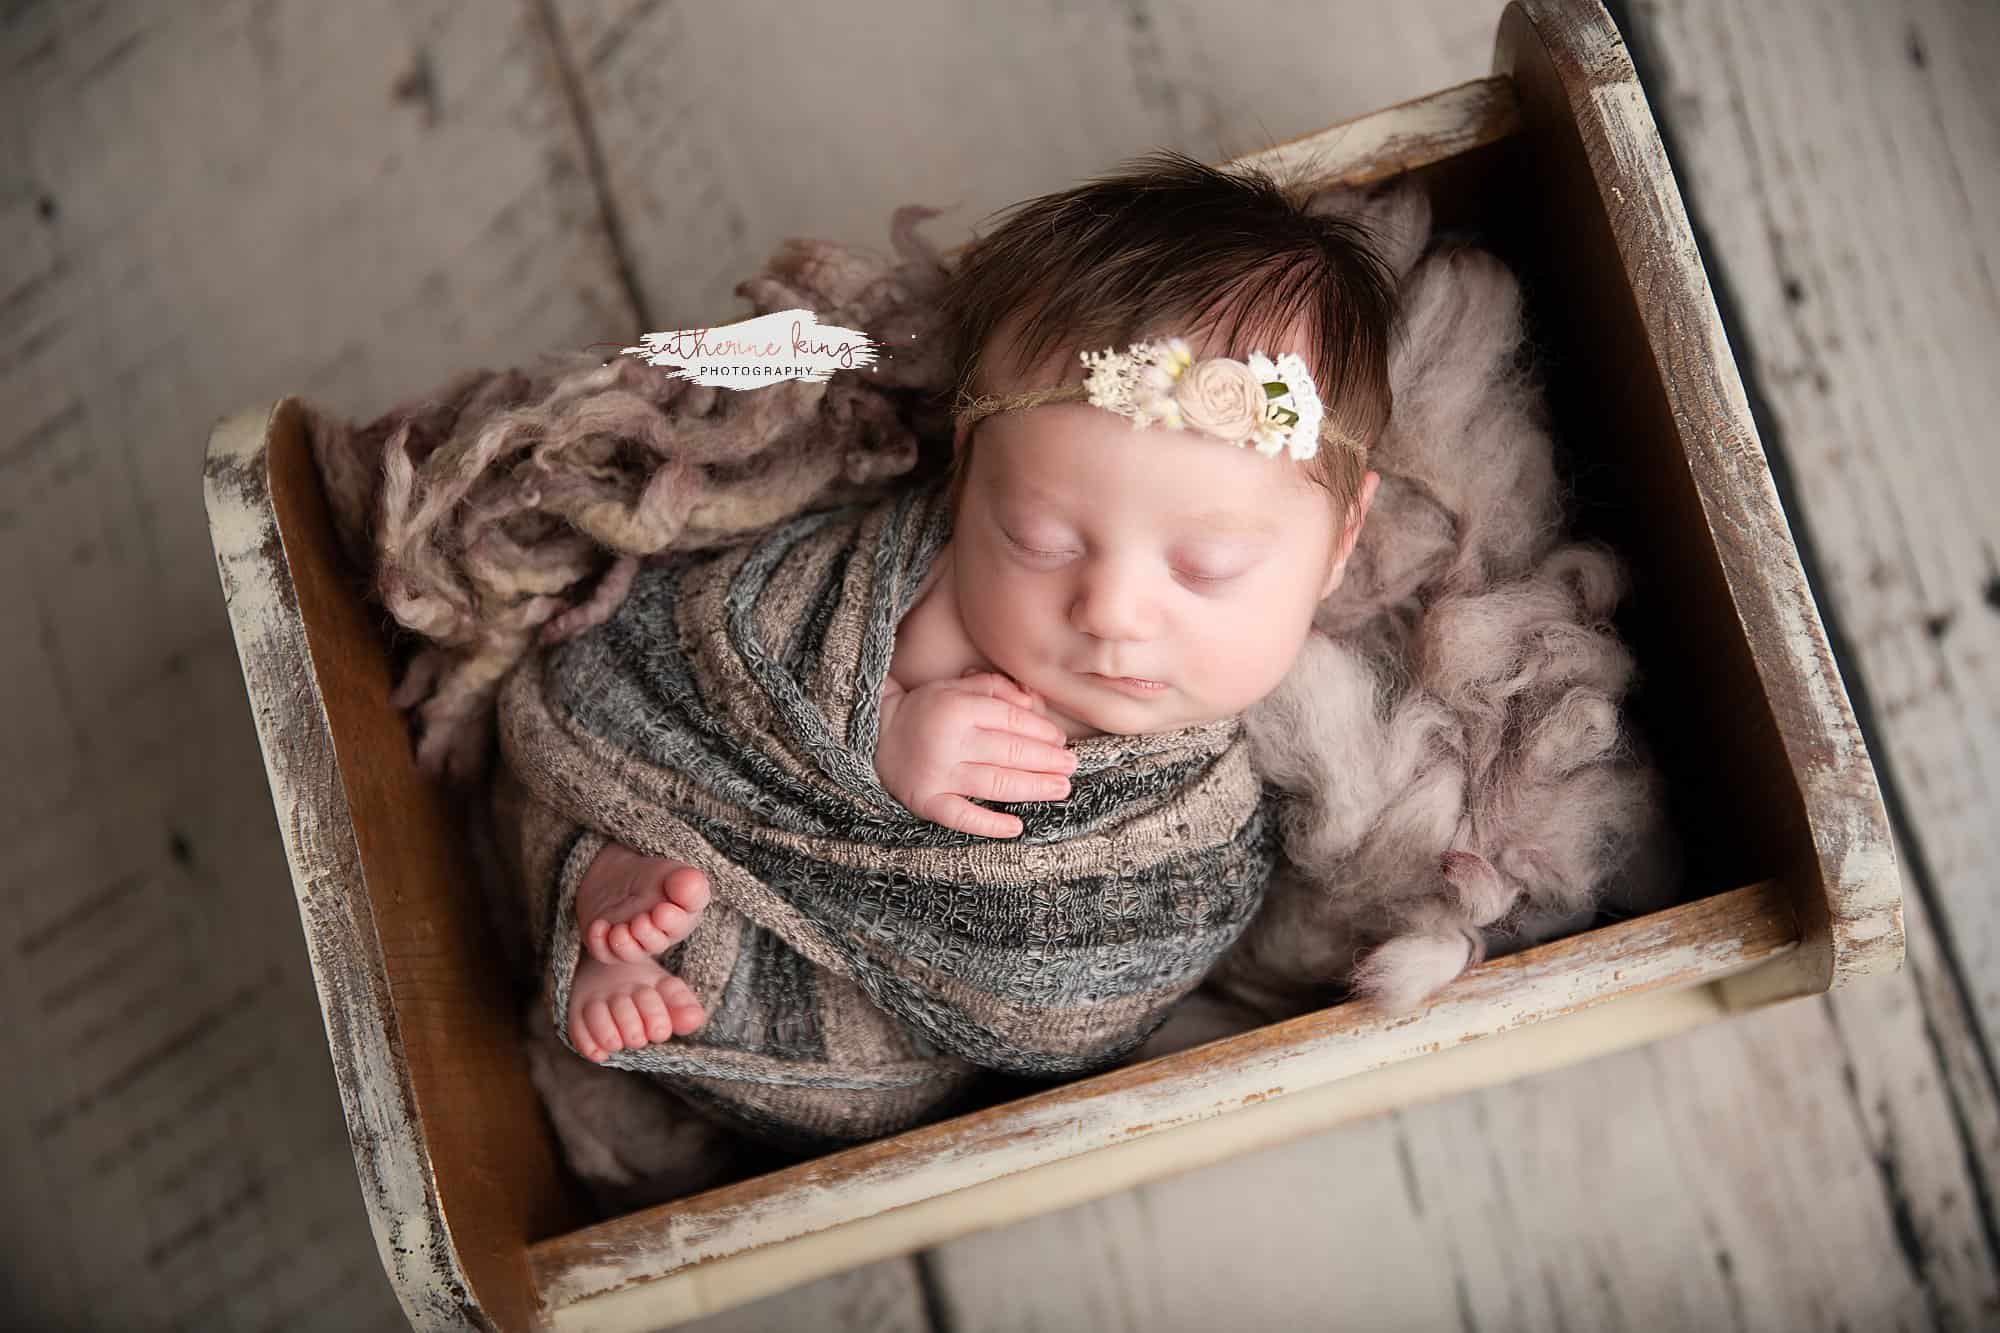 north branford ct newborn photographer, Madison's newborn photography